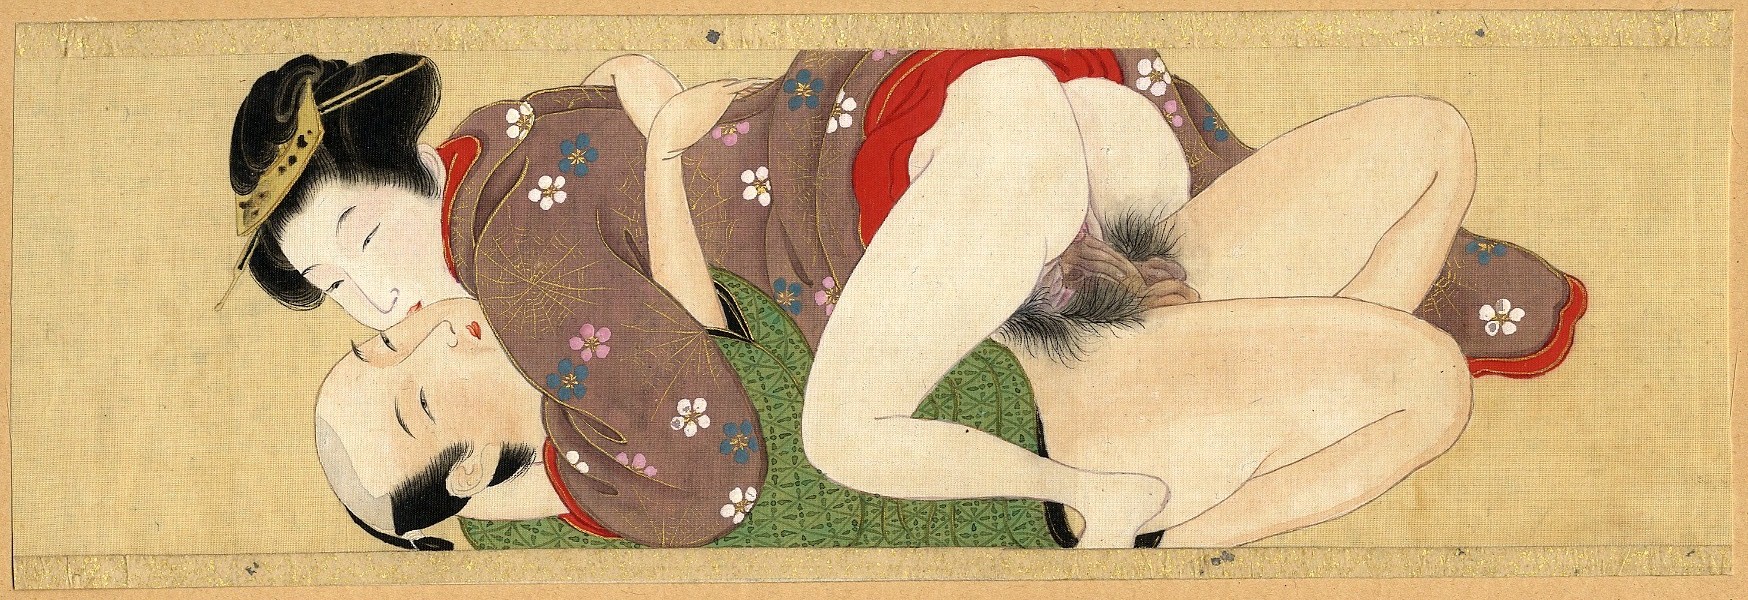 рисунки японская эротика фото 104